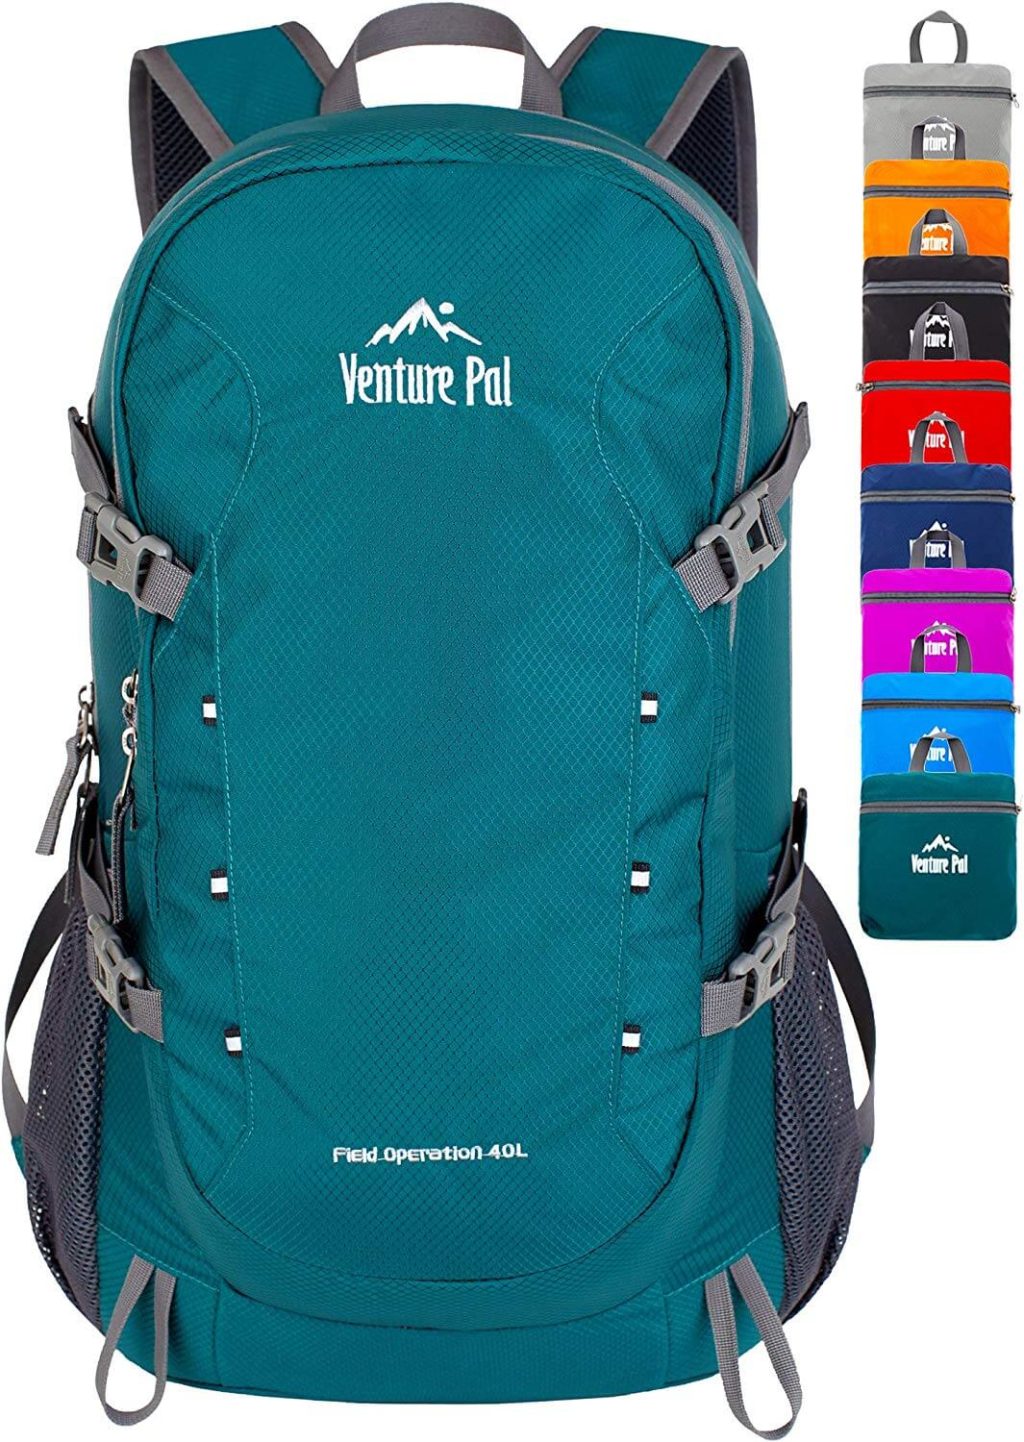 Venture Pal Waterproof Travel Hiking Backpack